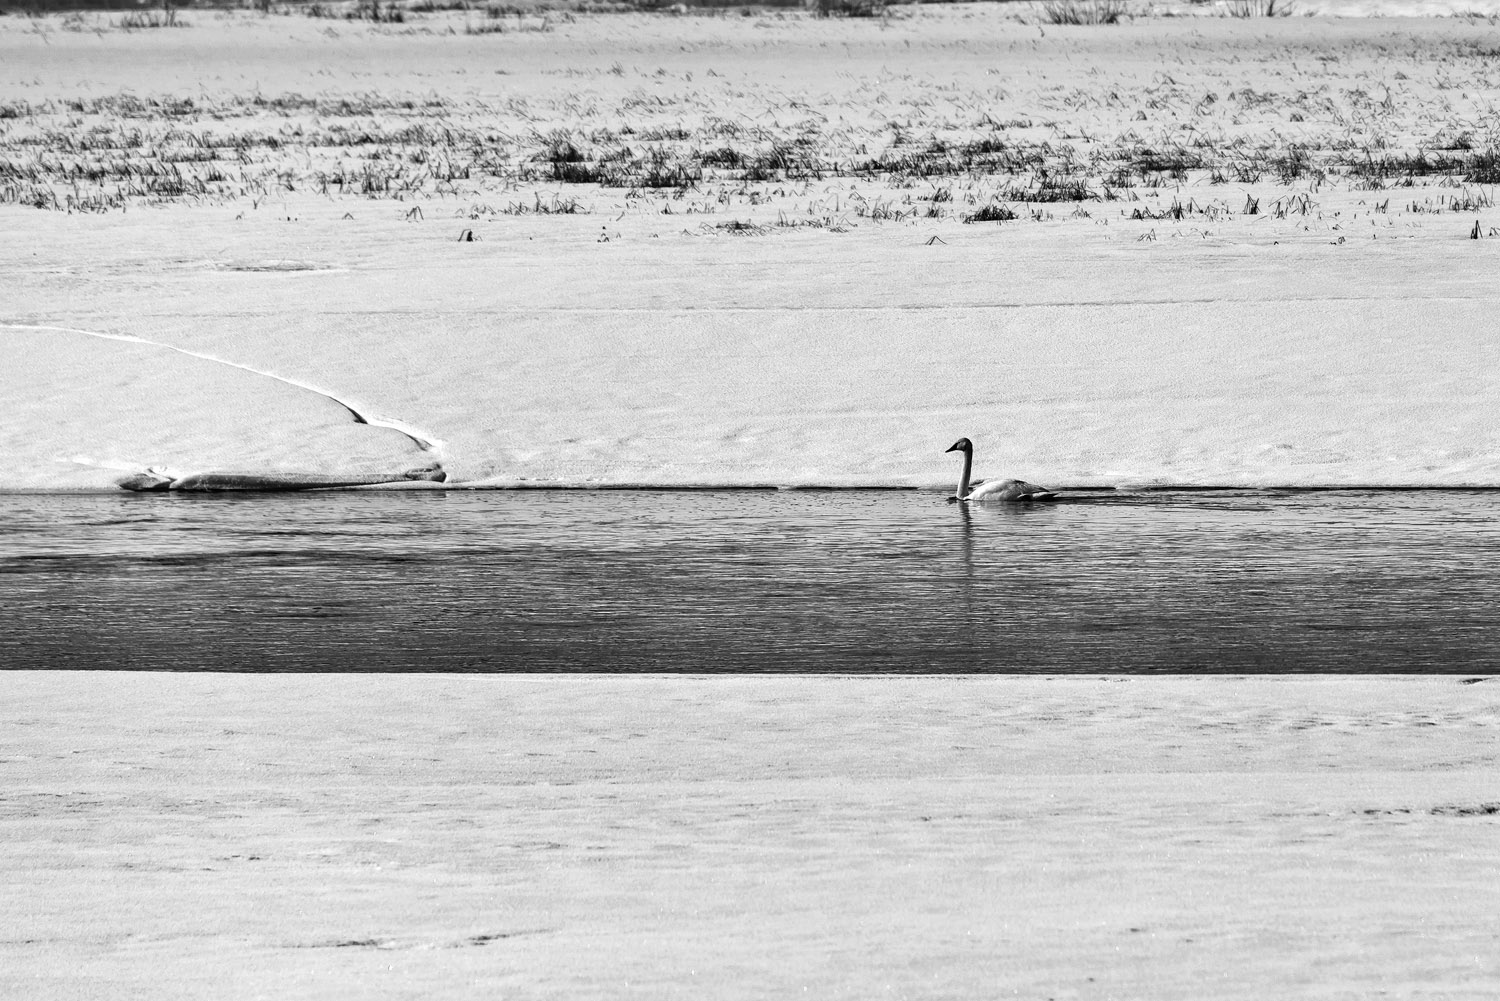 Whooper Swan in the Juntusranta lake, Finland